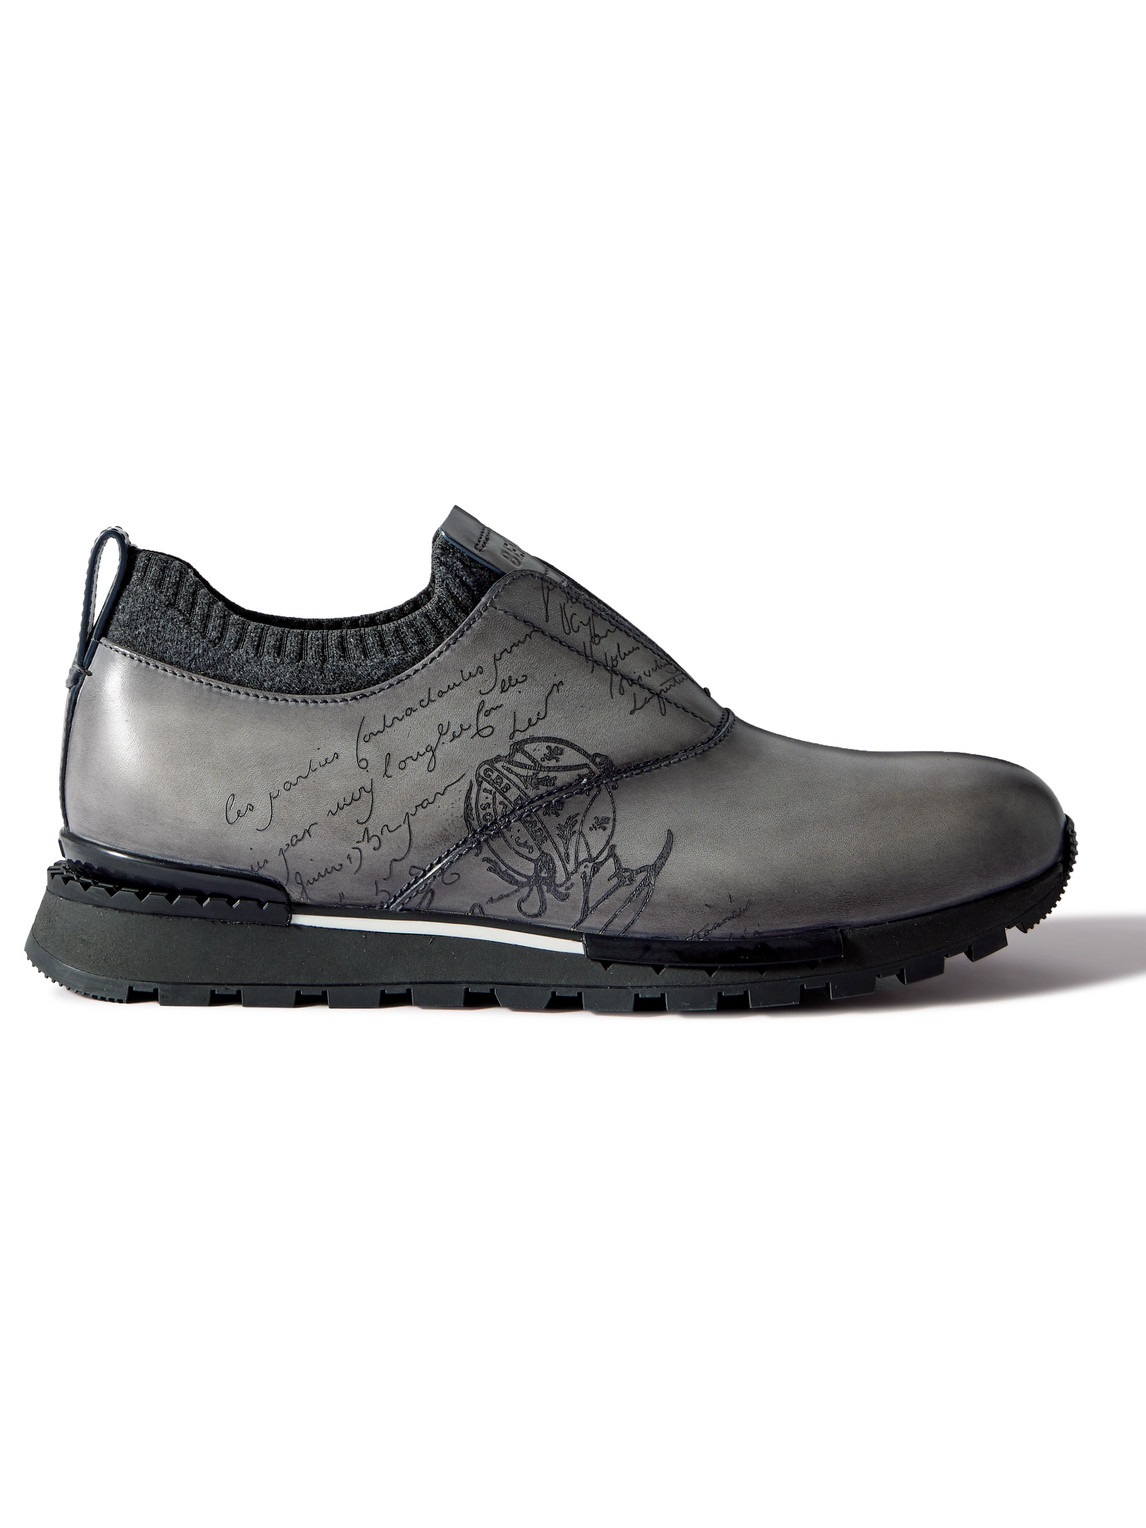 Berluti - Scritto Cashmere-Trimmed Venezia Leather Slip-On Sneakers - Men - Gray - UK 7 von Berluti